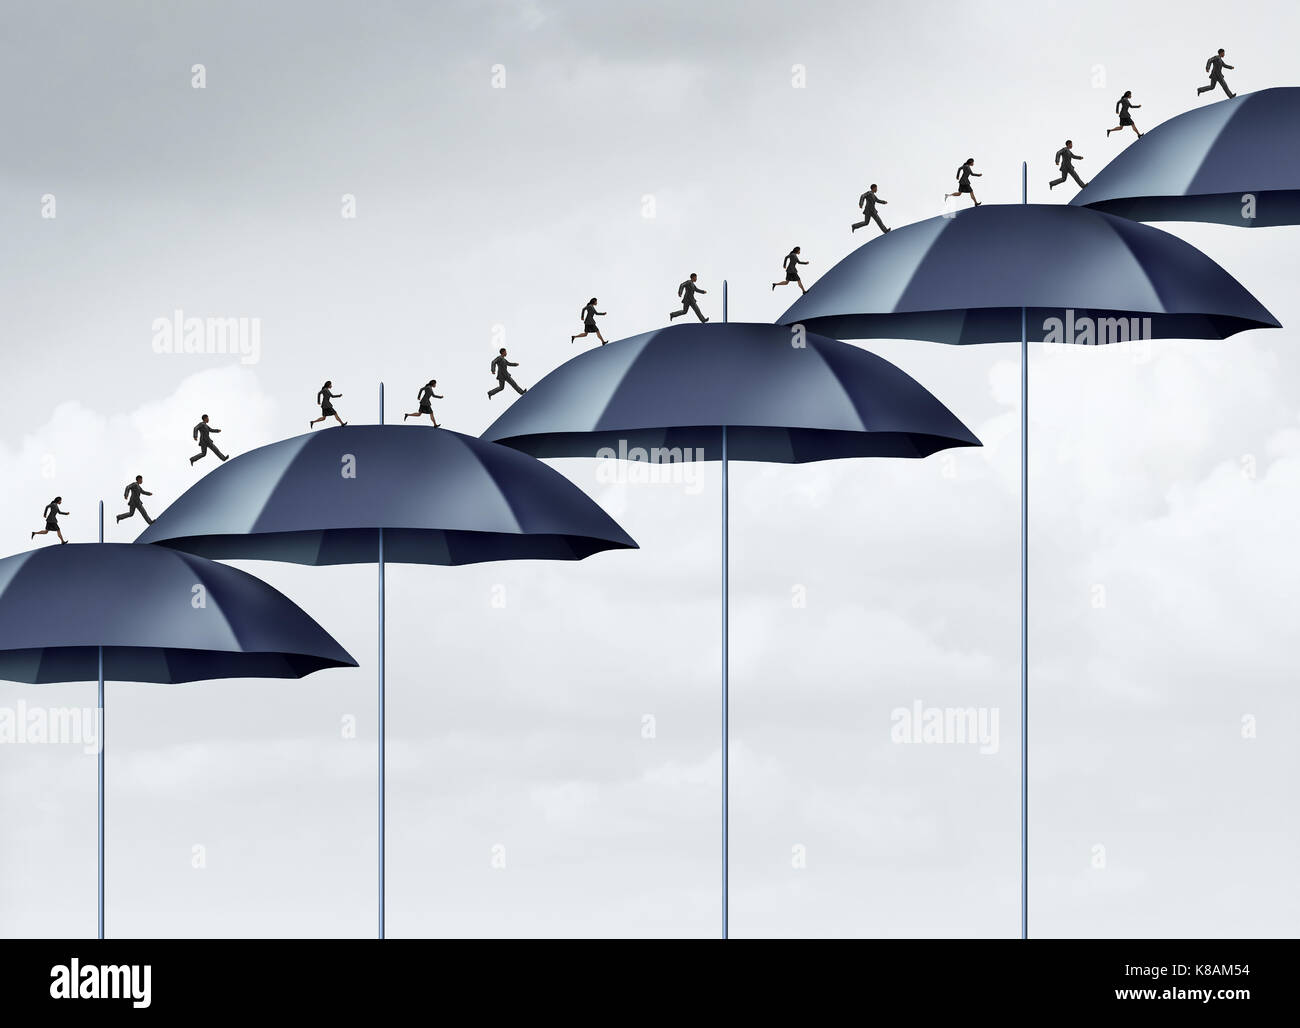 Sicherheit erhöhen die Sicherheit Strategie Konzept als eine Gruppe von Menschen nach oben läuft mit einer steigenden Diagramm der Regenschirm Objekte als Mitarbeiter. Stockfoto